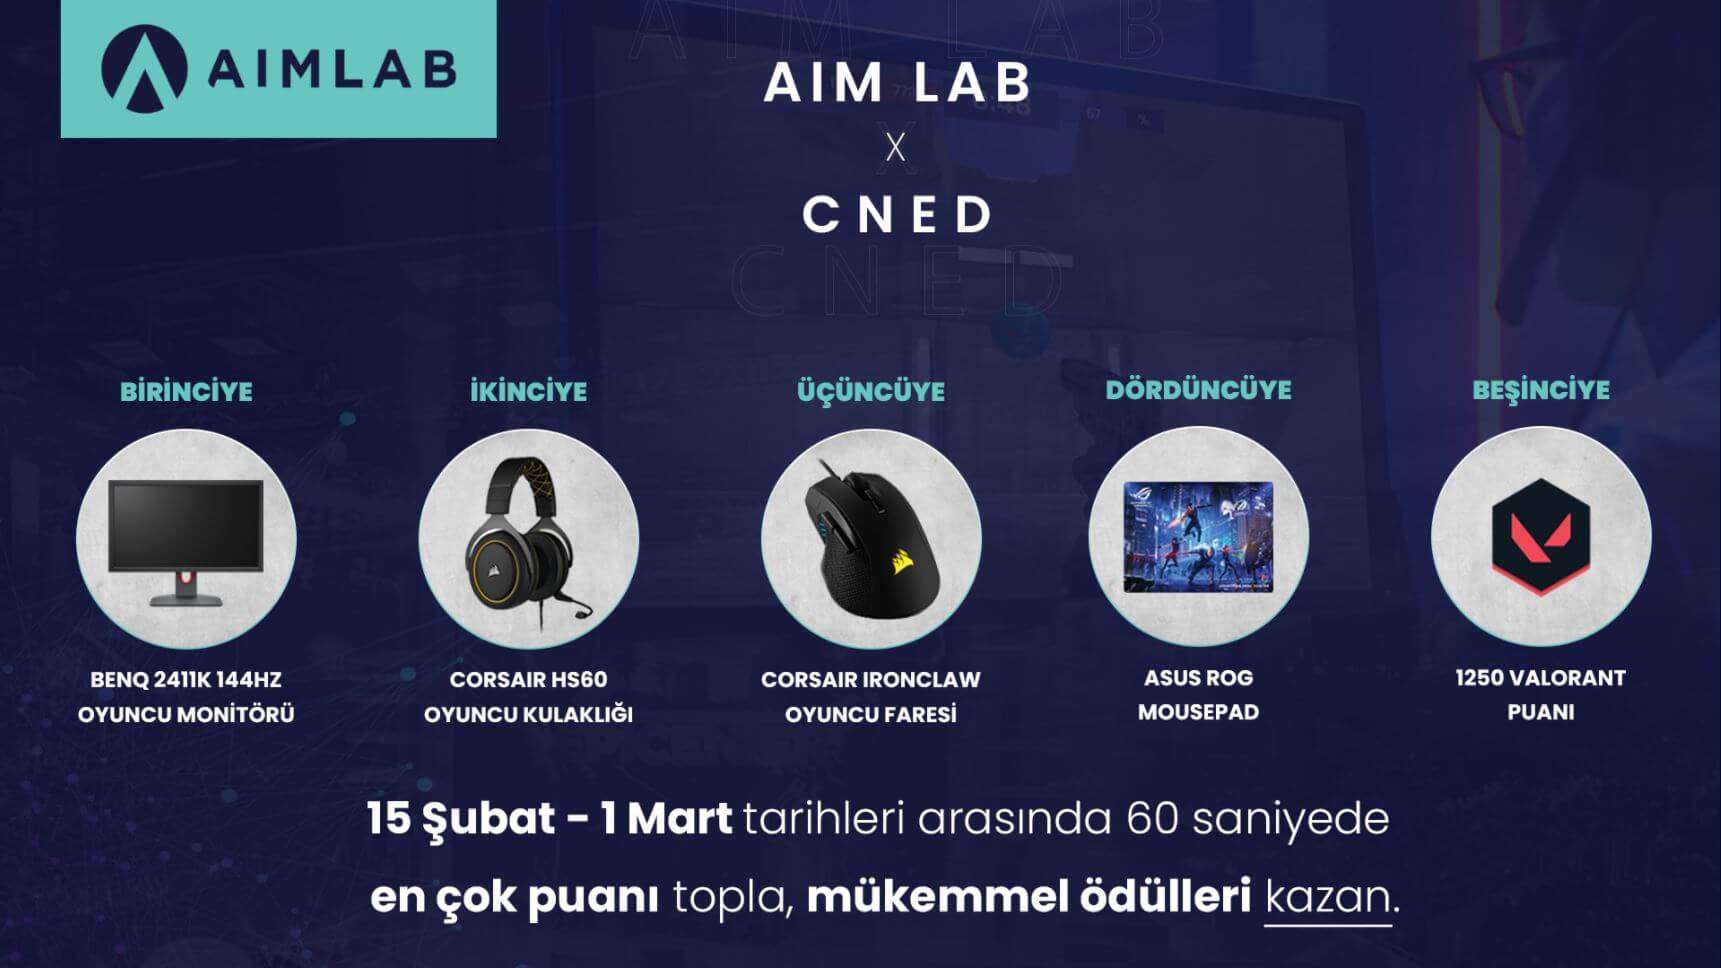 cNed Aim Lab Ortaklığı ile  Yarışma Düzenliyor